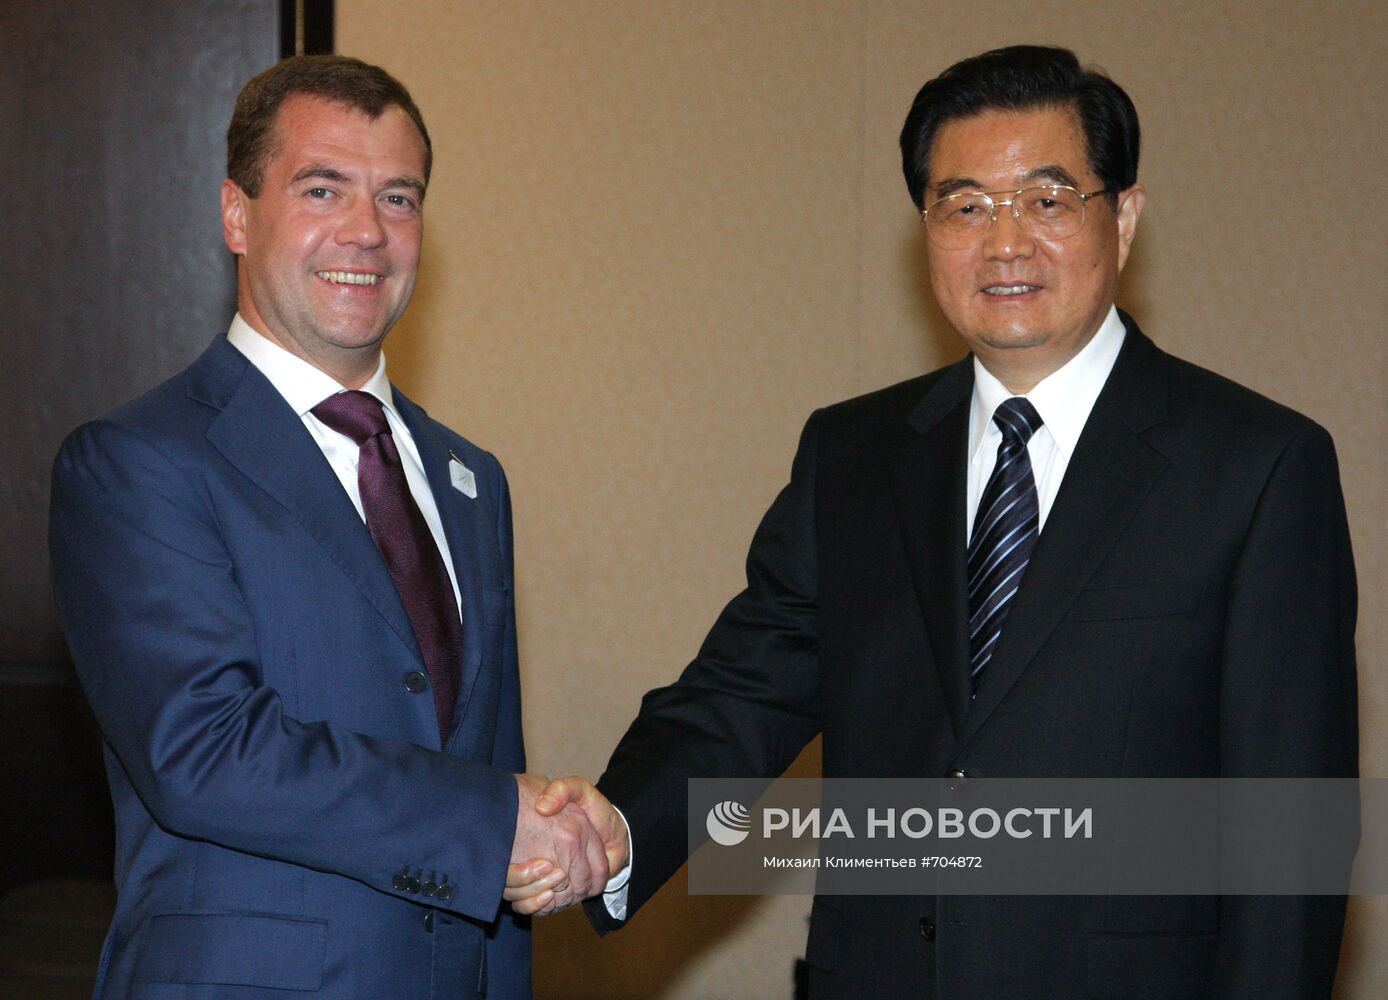 Д.Медведев на саммите G20 в Торонто